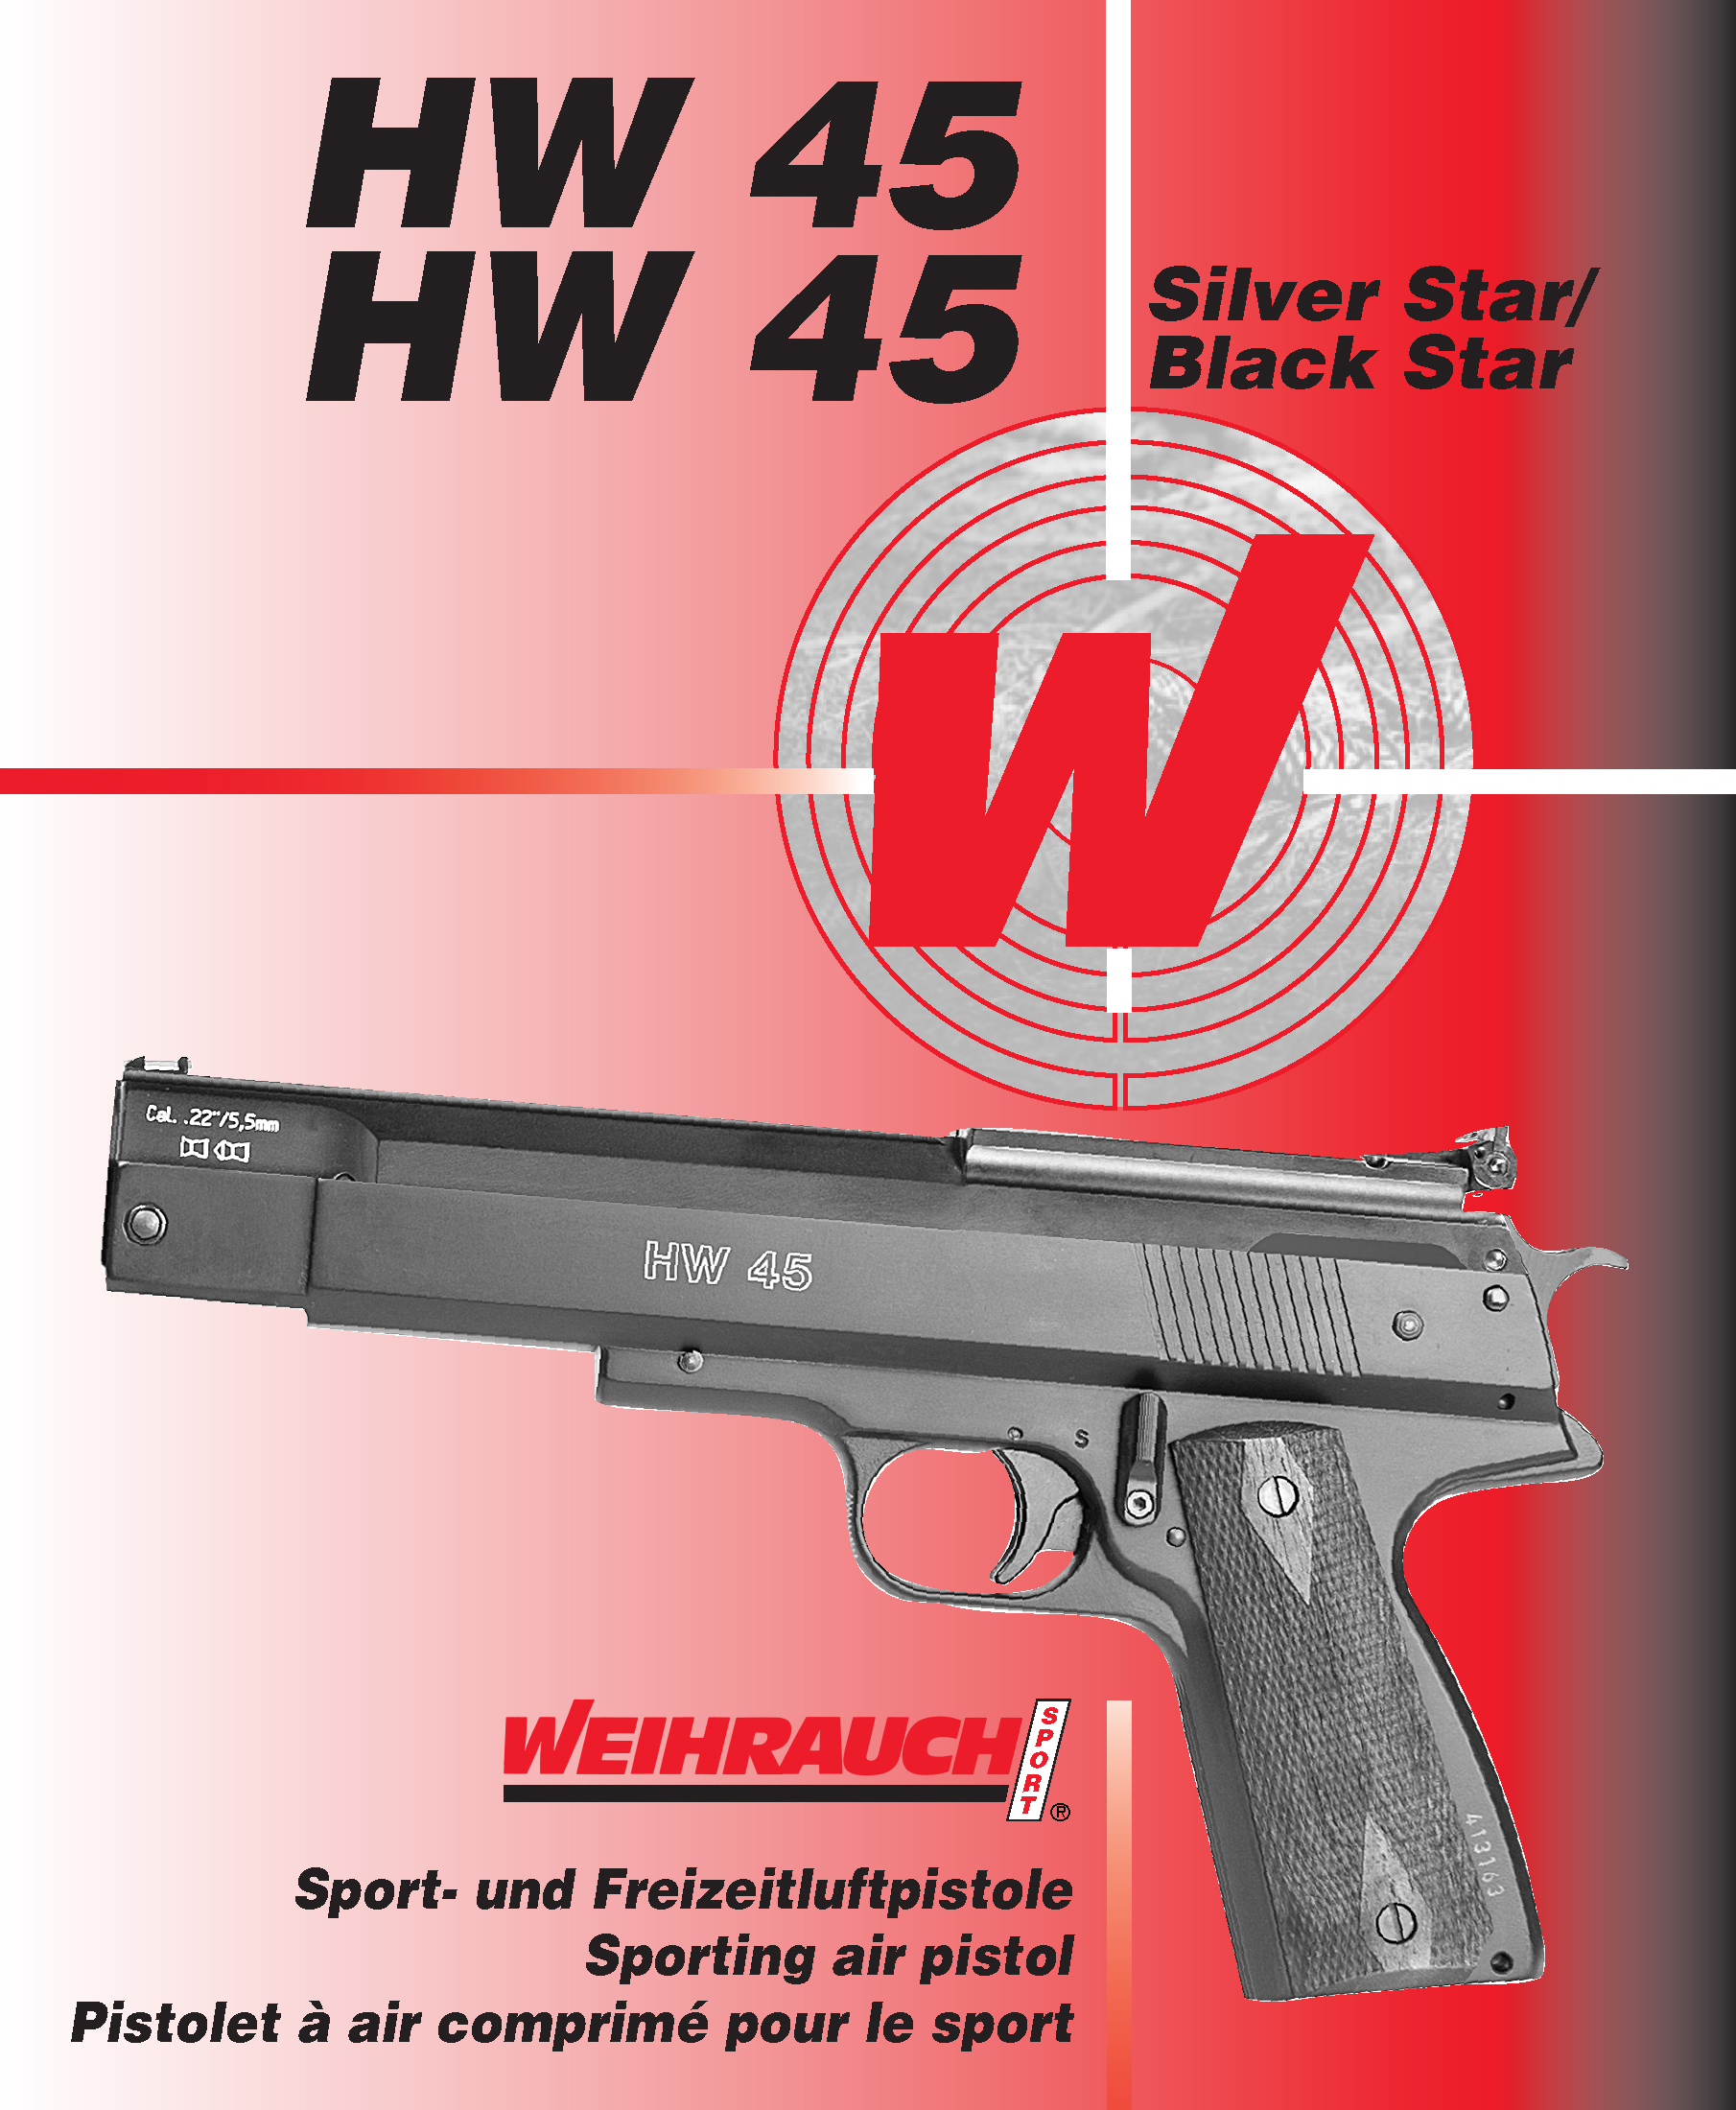 Manual WW Luftpistole HW 45 HW45 Silver bzw Black Star 05 2015 1